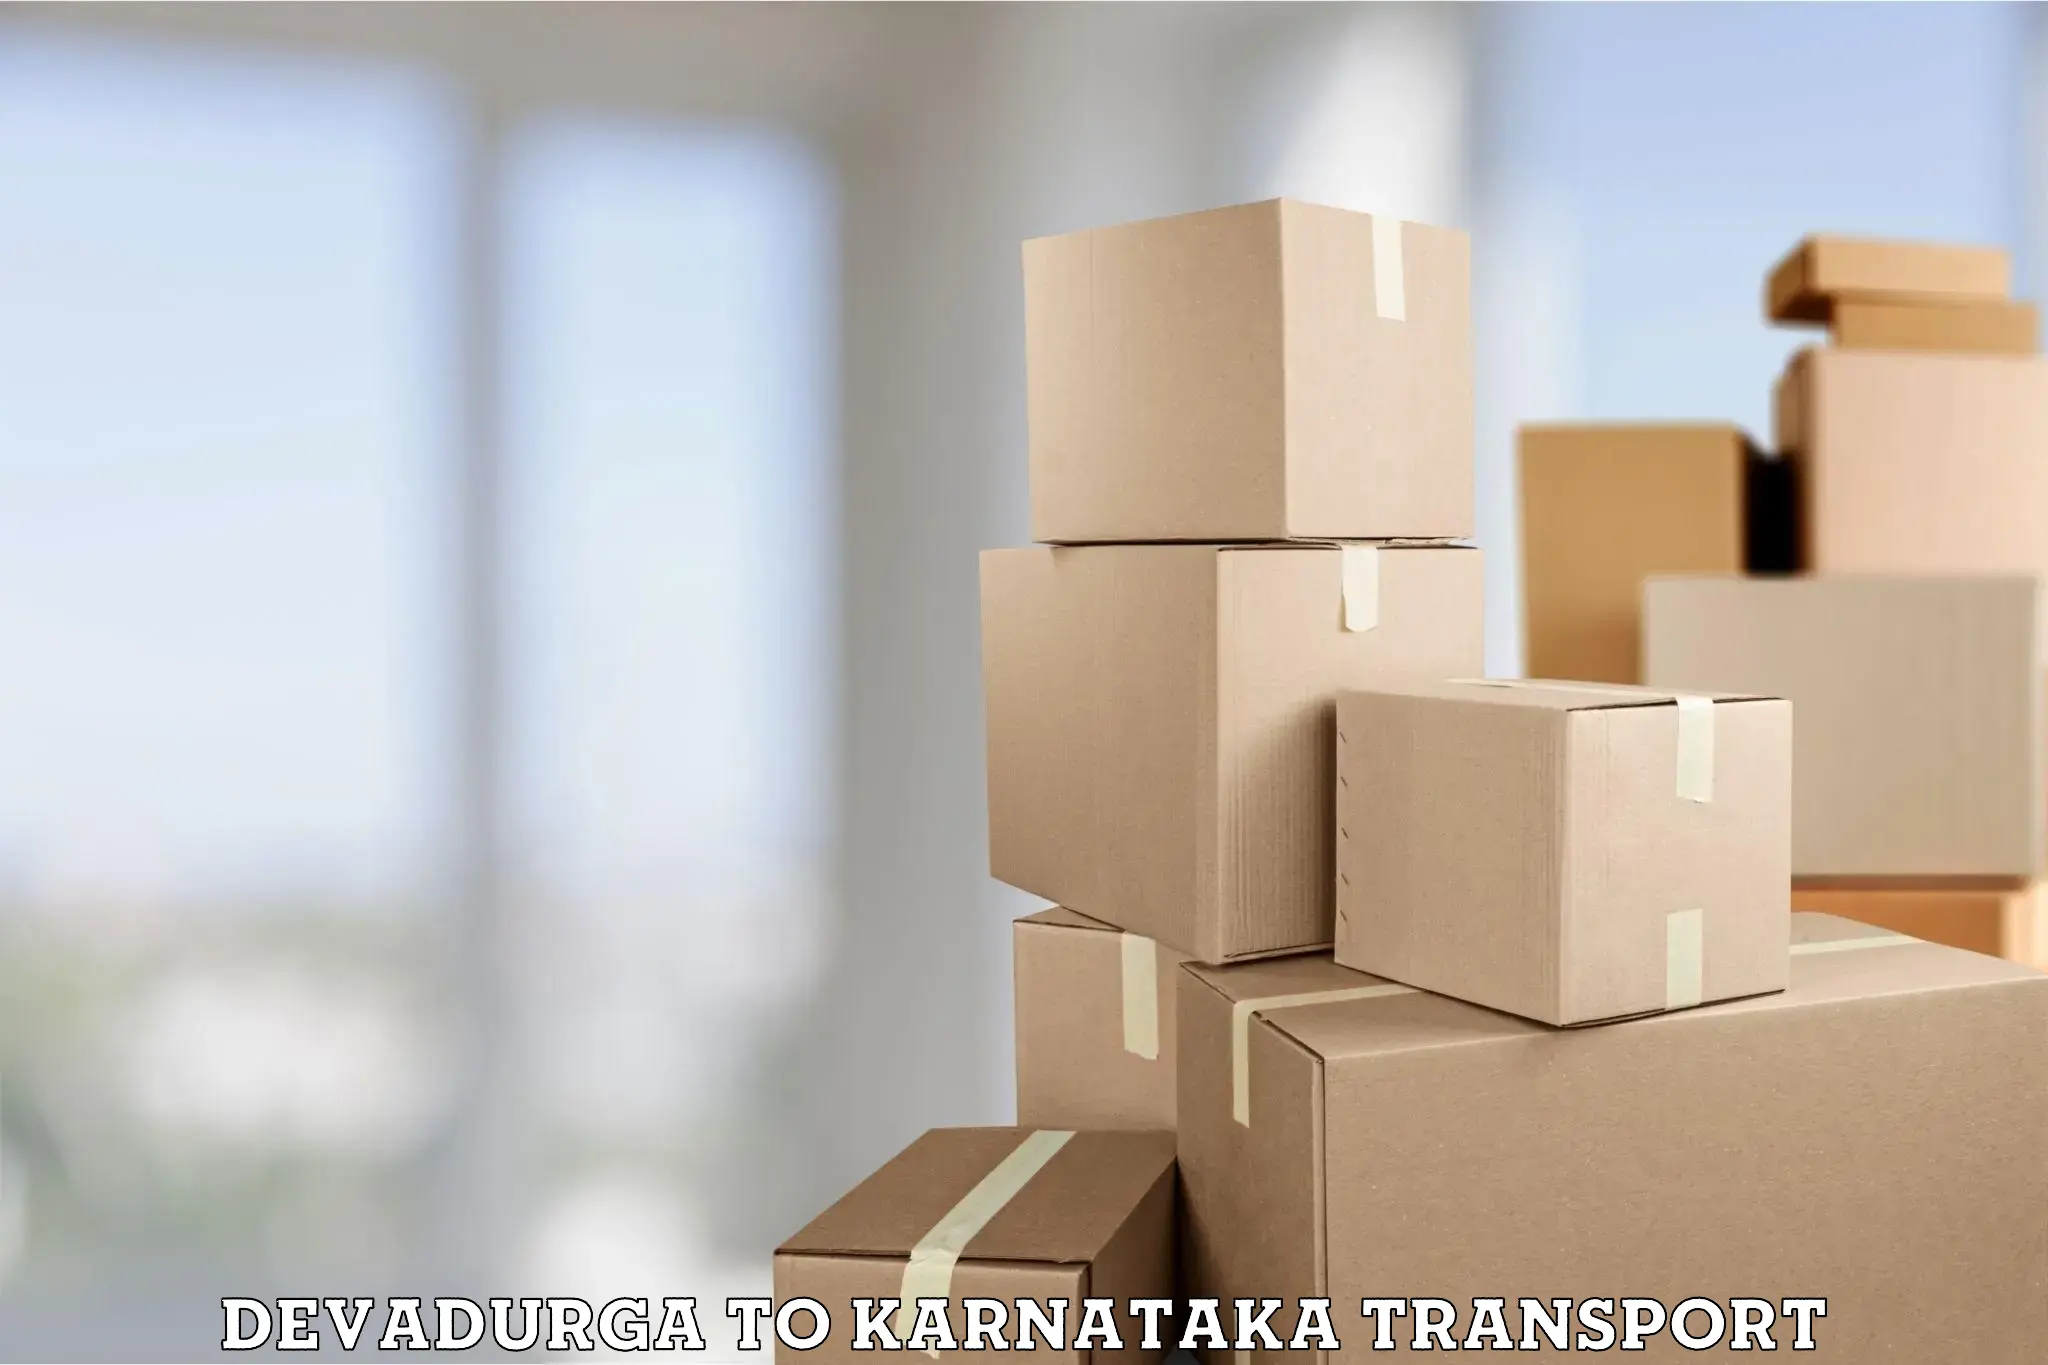 Container transport service Devadurga to Mysore